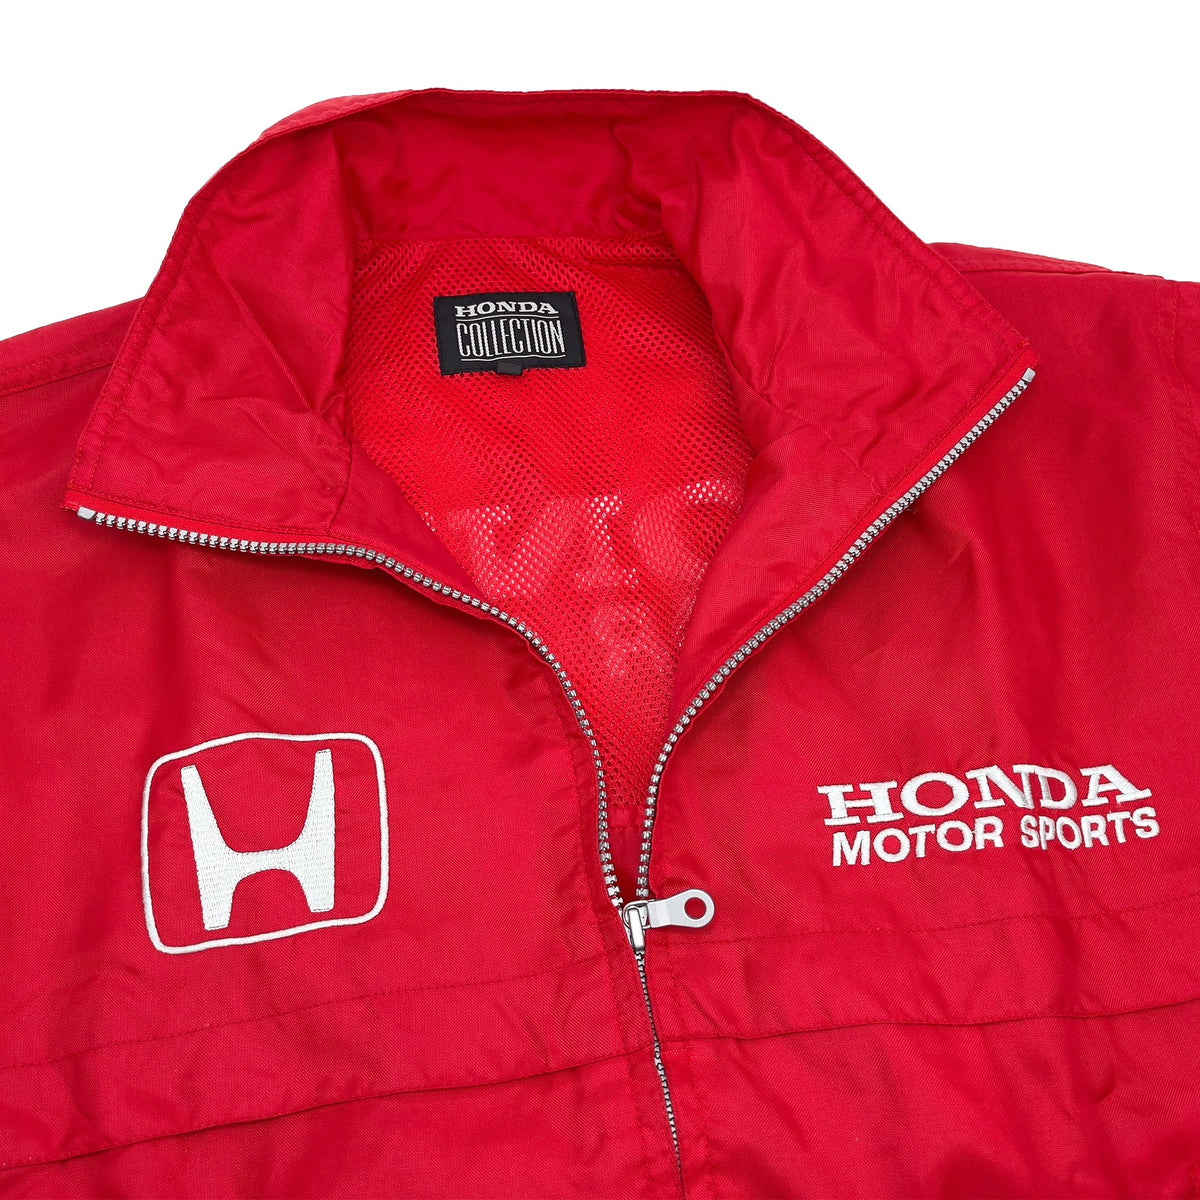 tro skrue tykkelse Retro Genuine JDM Japan Honda Motor Sports Racing Team Jacket Red – Sugoi  JDM